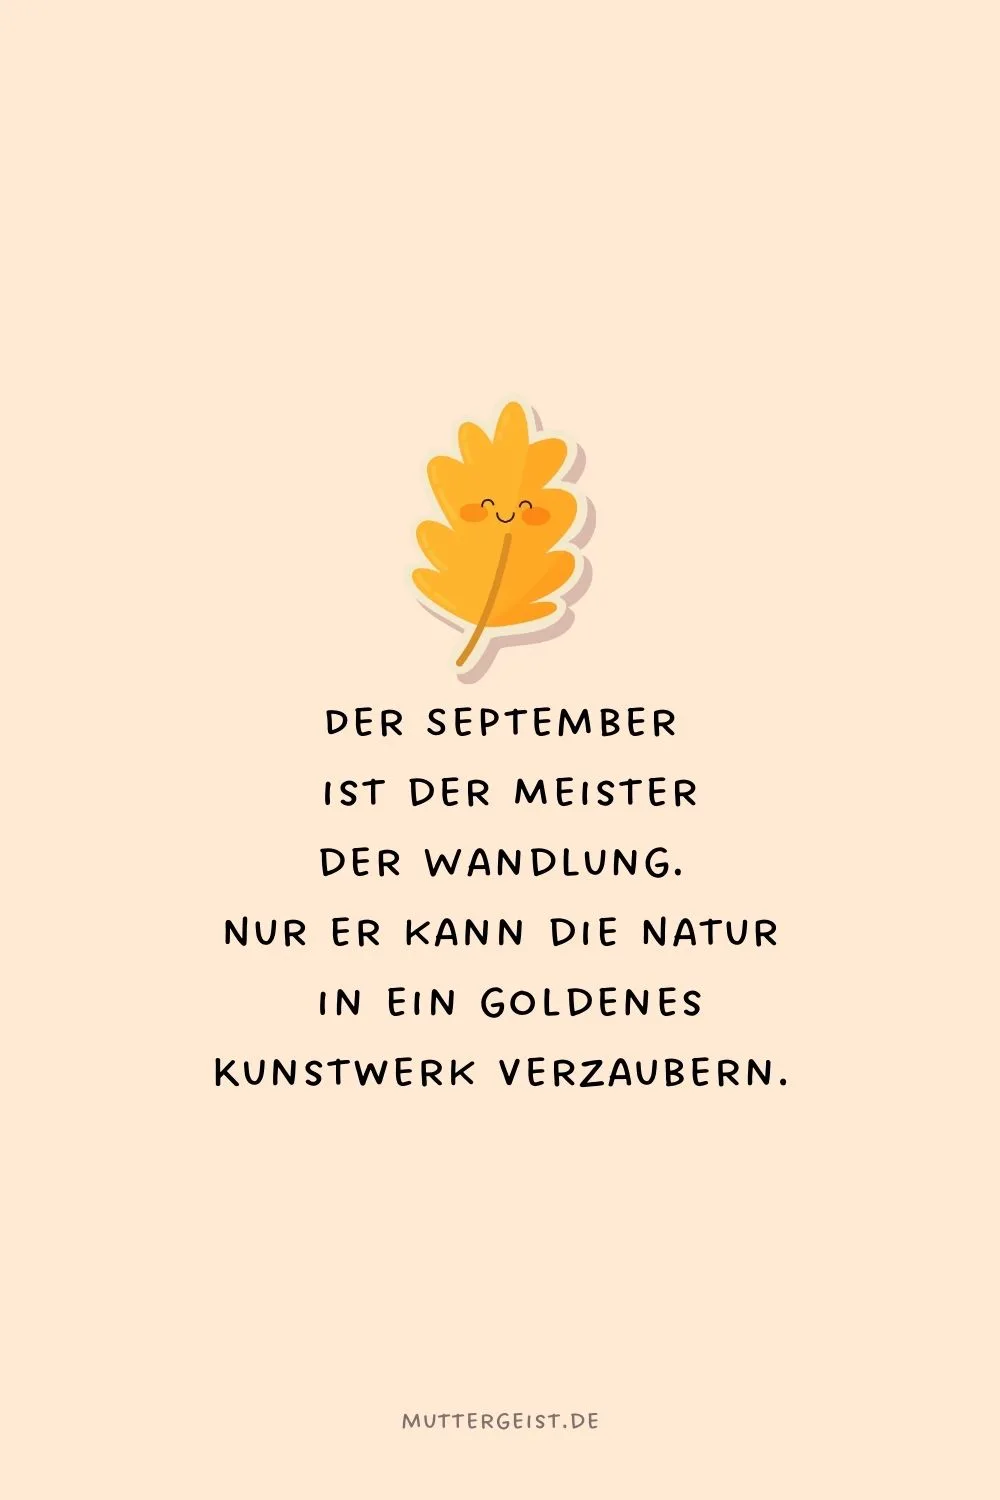 Der September ist der Meister der Wandlung. Nur er kann die Natur in ein goldenes Kunstwerk verzaubern